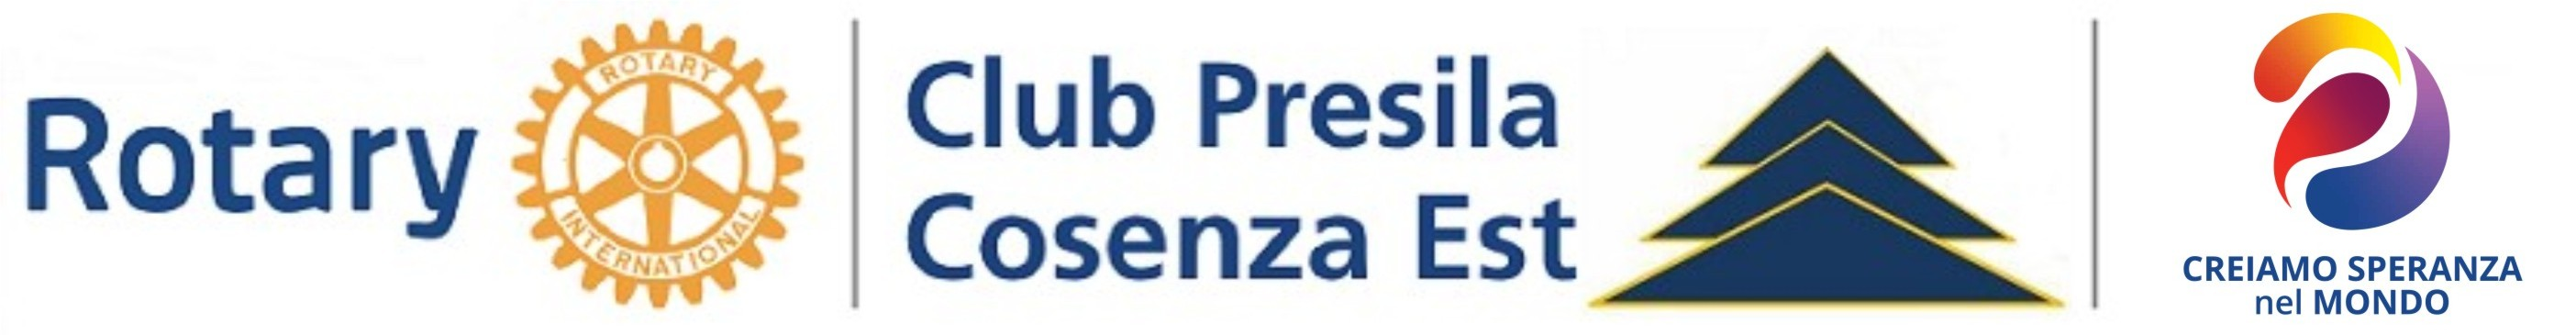 Rotary Presila Cosenza Est